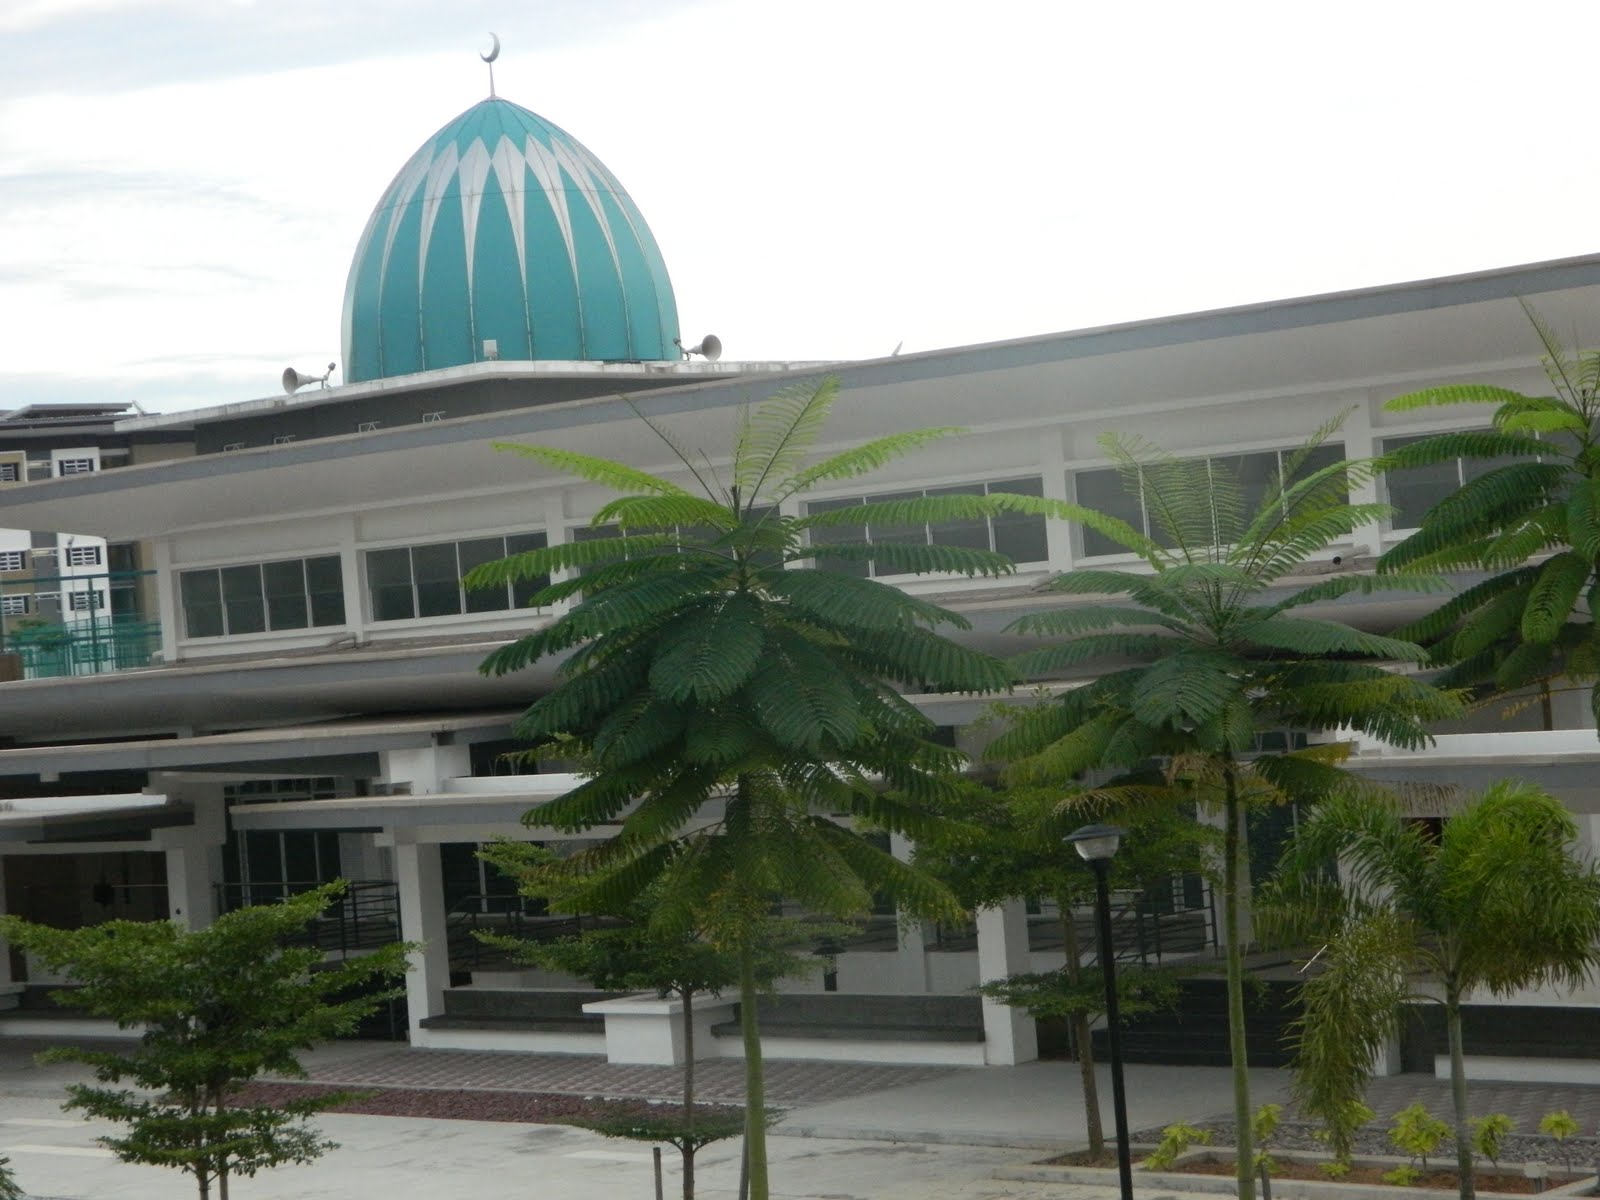 Asasi Sains Kesihatan Bersekutu : Kolej Sains Kesihatan Bersekutu Johor